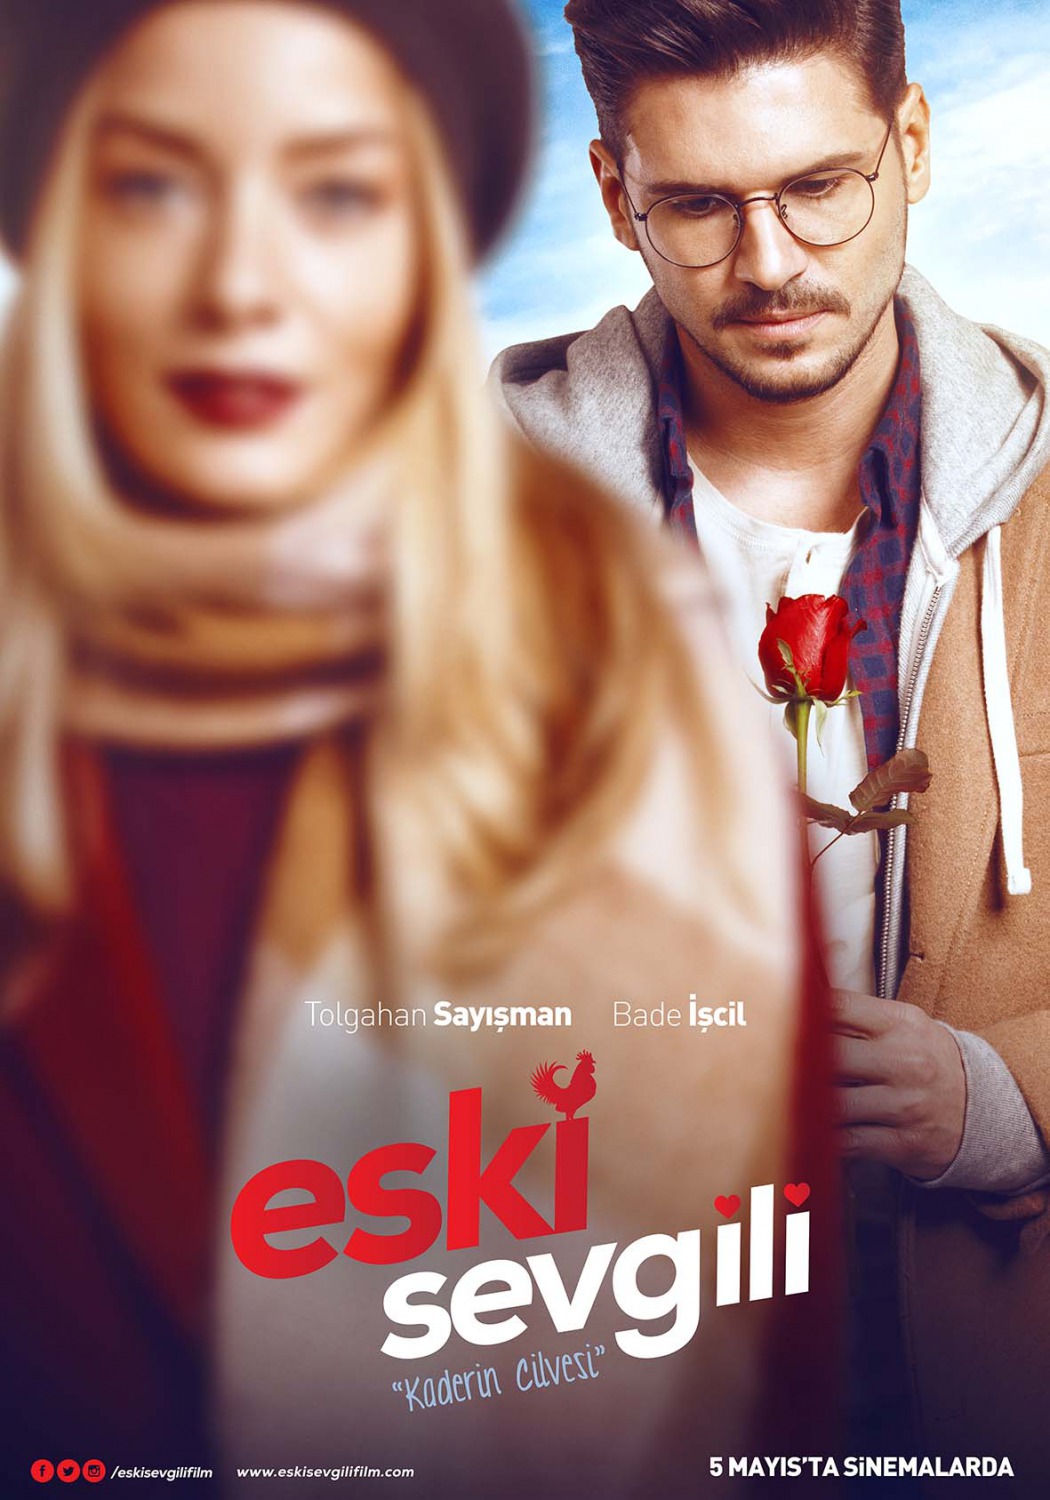 Extra Large Movie Poster Image for Eski Sevgili (#1 of 4)